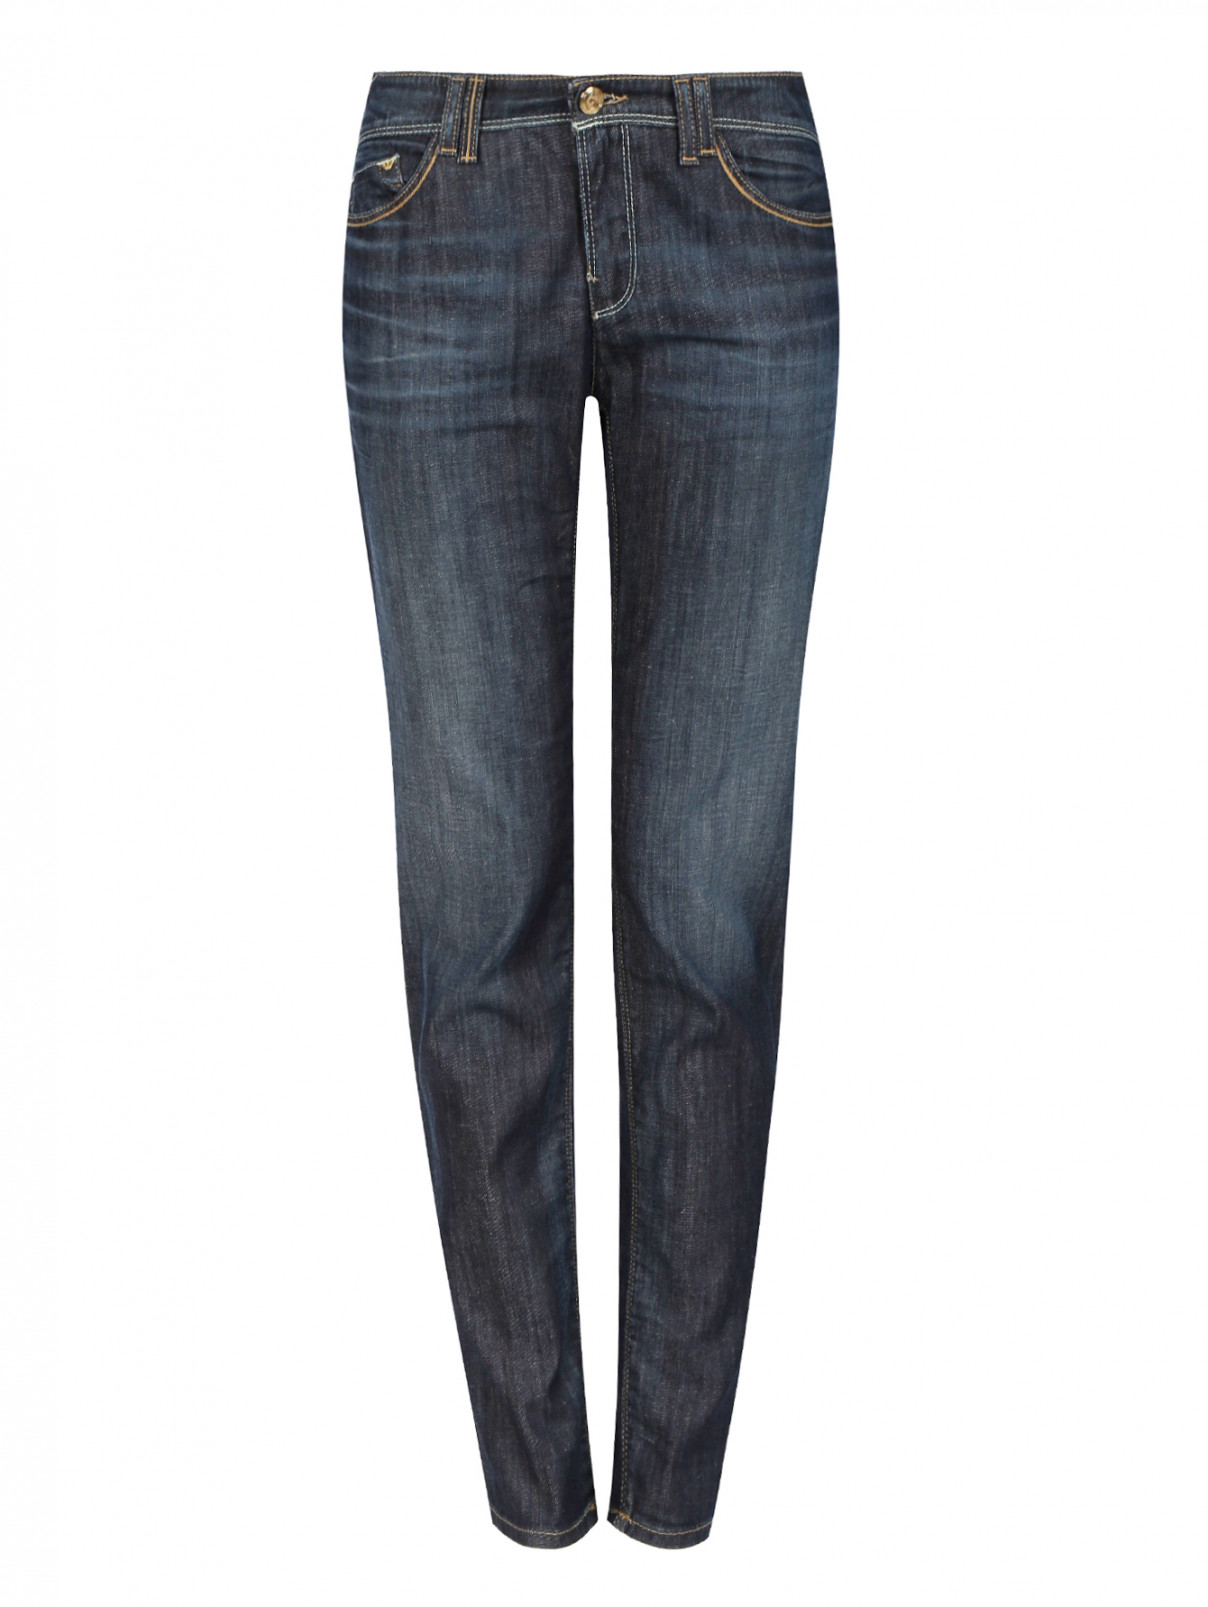 Узкие джинсы из потертого денима Armani Jeans  –  Общий вид  – Цвет:  Синий